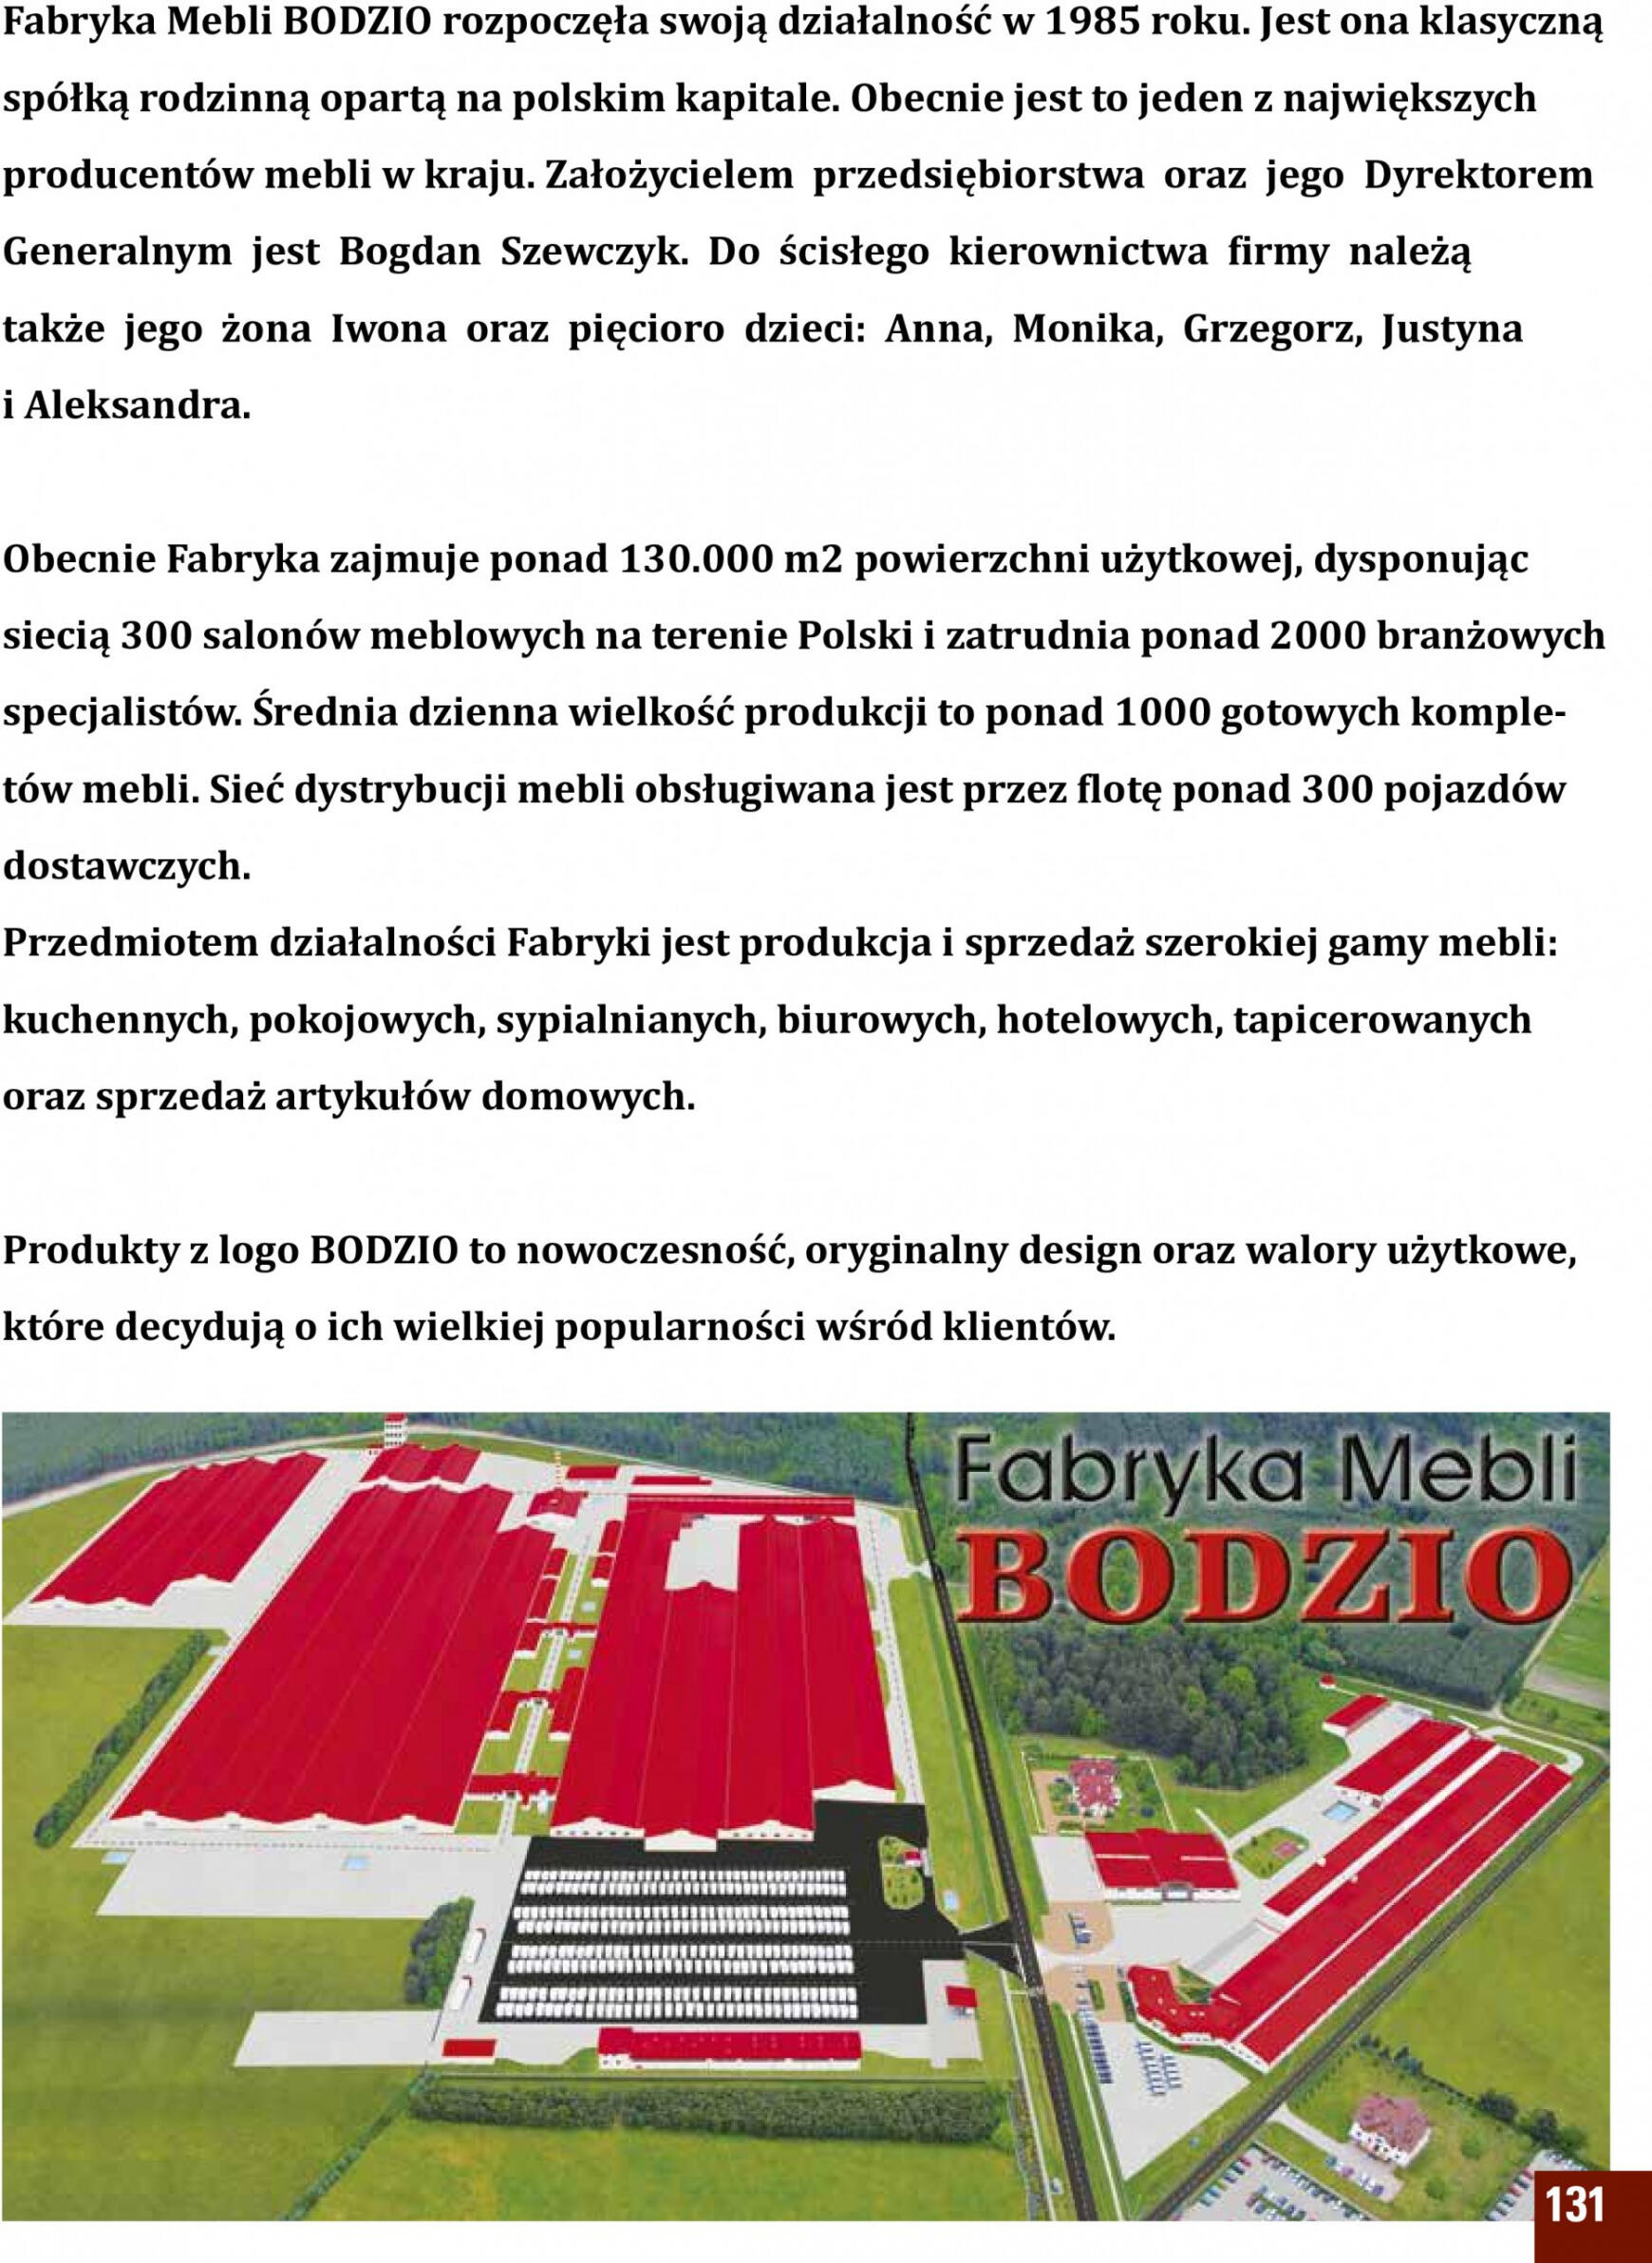 bodzio - Bodzio - Fabryka Mebli - page: 131